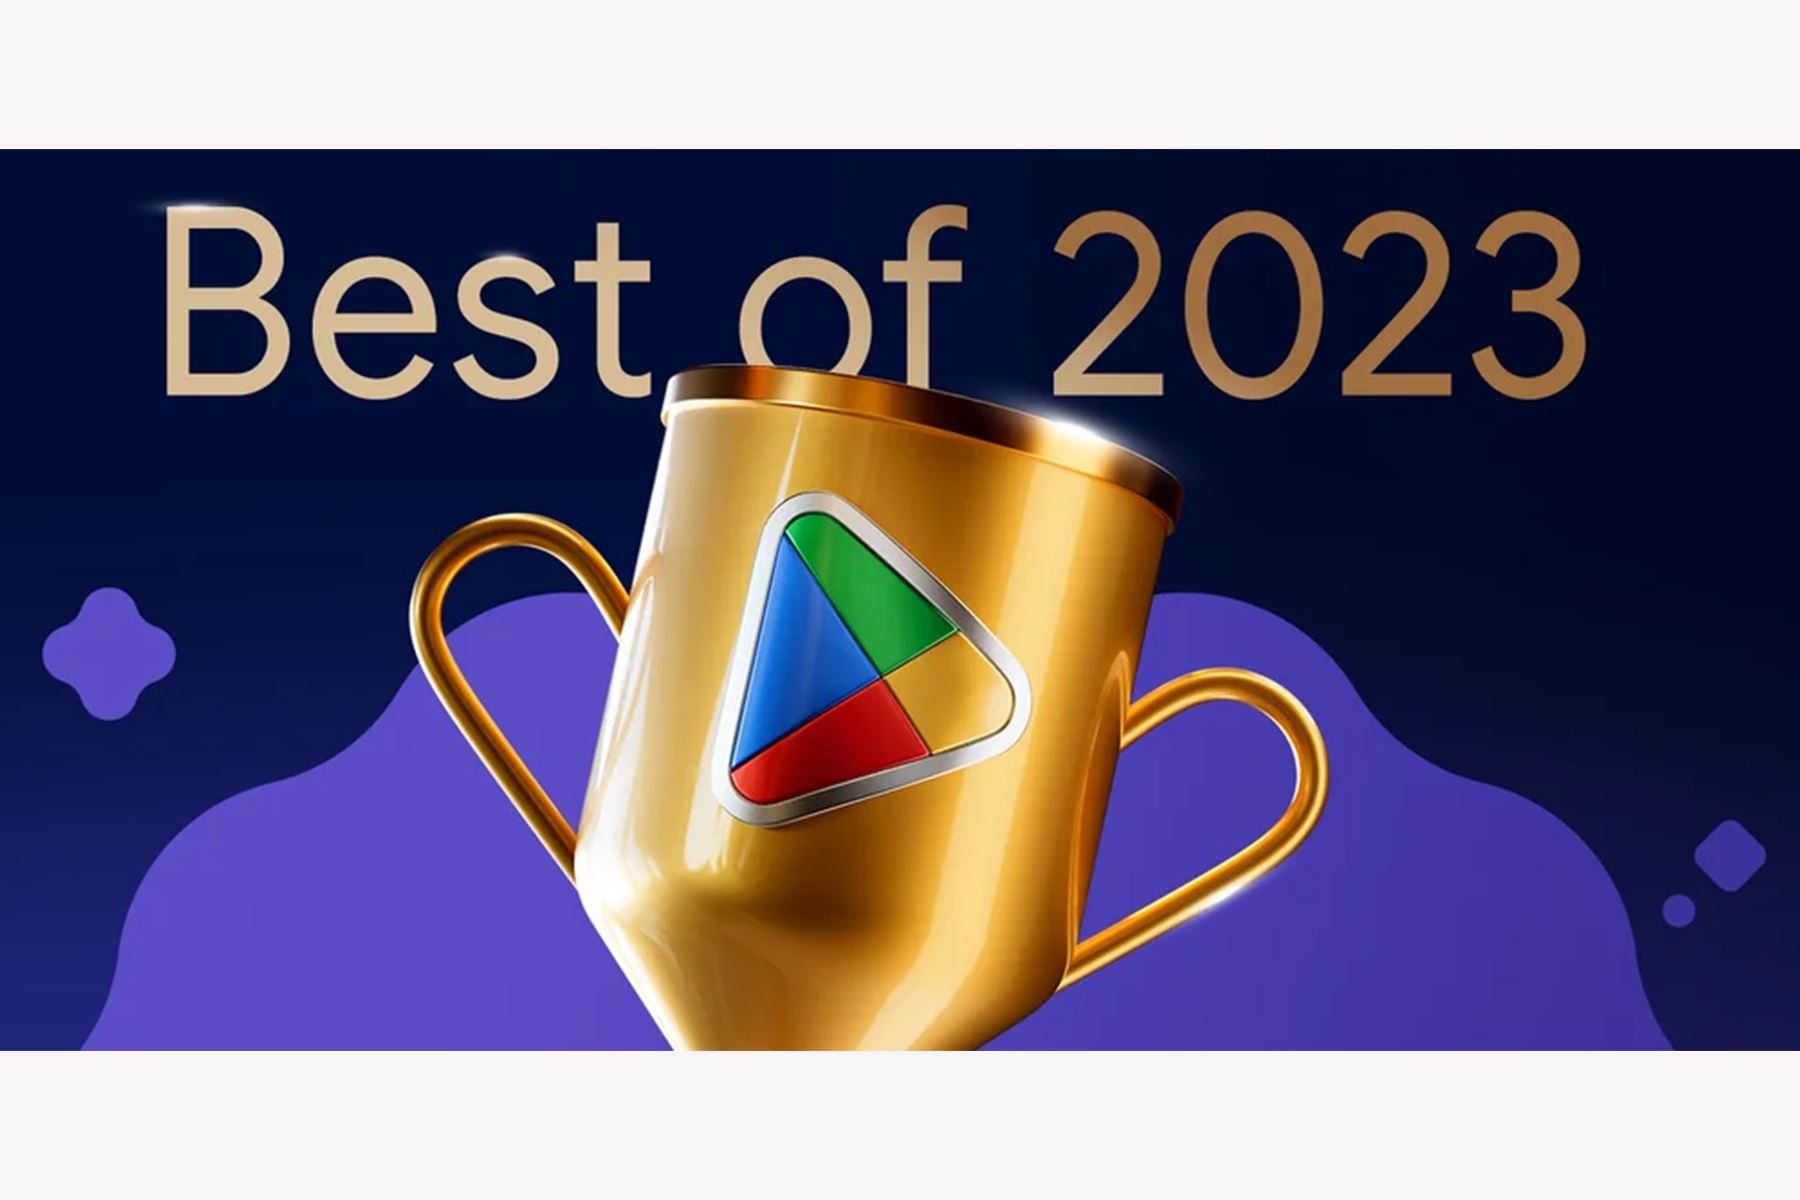 Como cada año, Google Play dio a conocer las mejores aplicaciones y juegos móviles del 2023. Para esta edición, Imprint: Learn Visually logró coronarse como la mejor app del año.